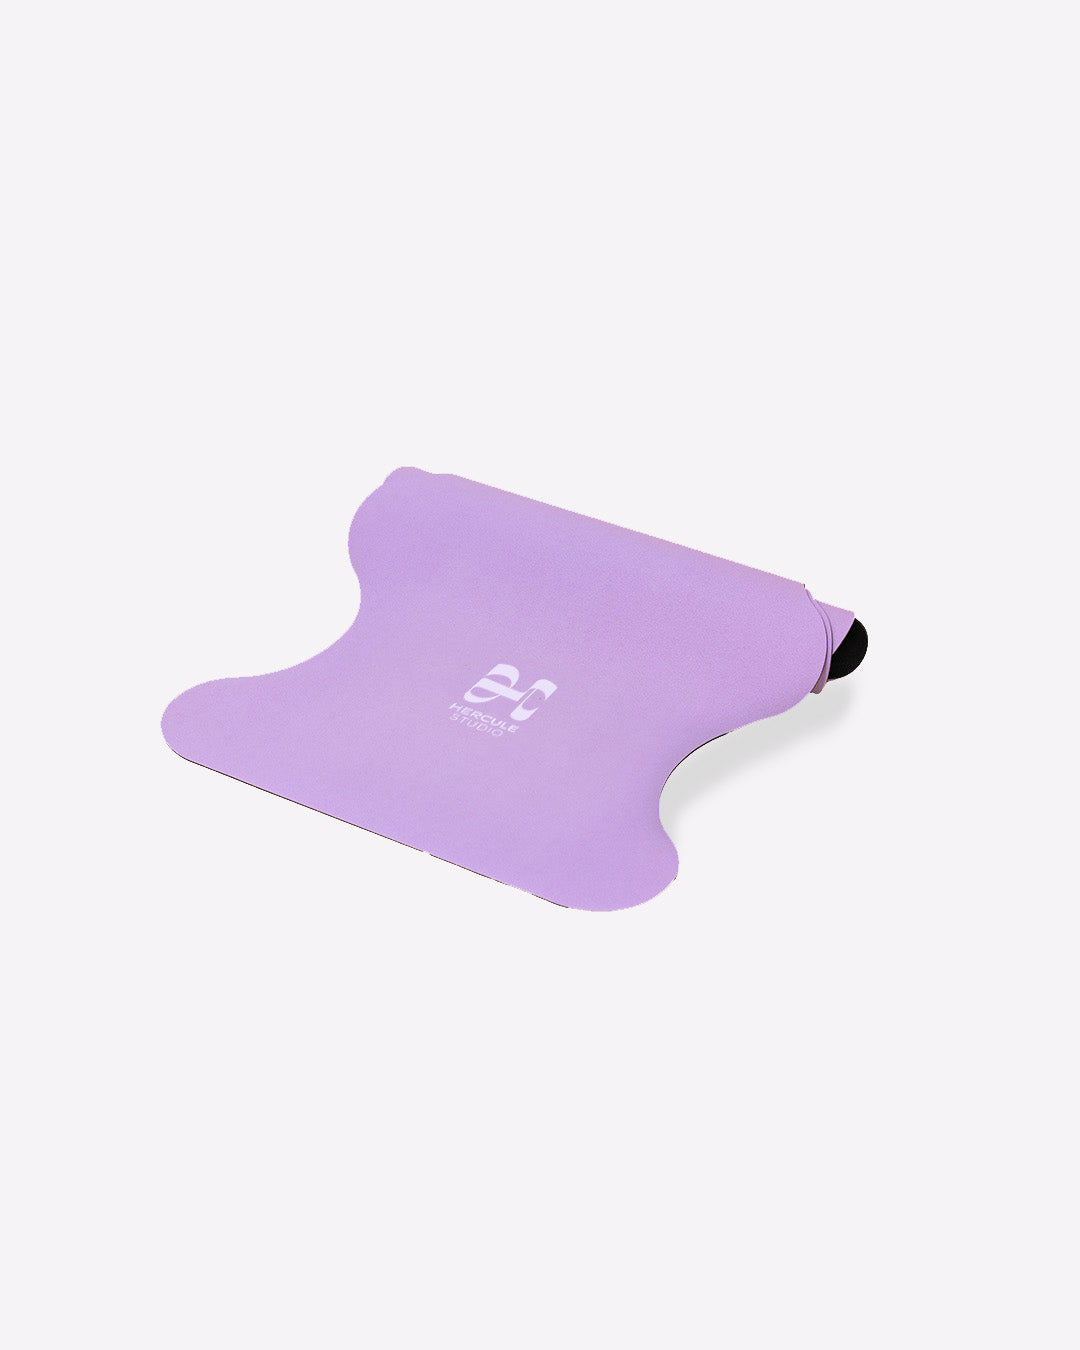 Tapis de sol pour le yoga de la marque hercule studio modèle mar couleur lavande packshot semi roulé